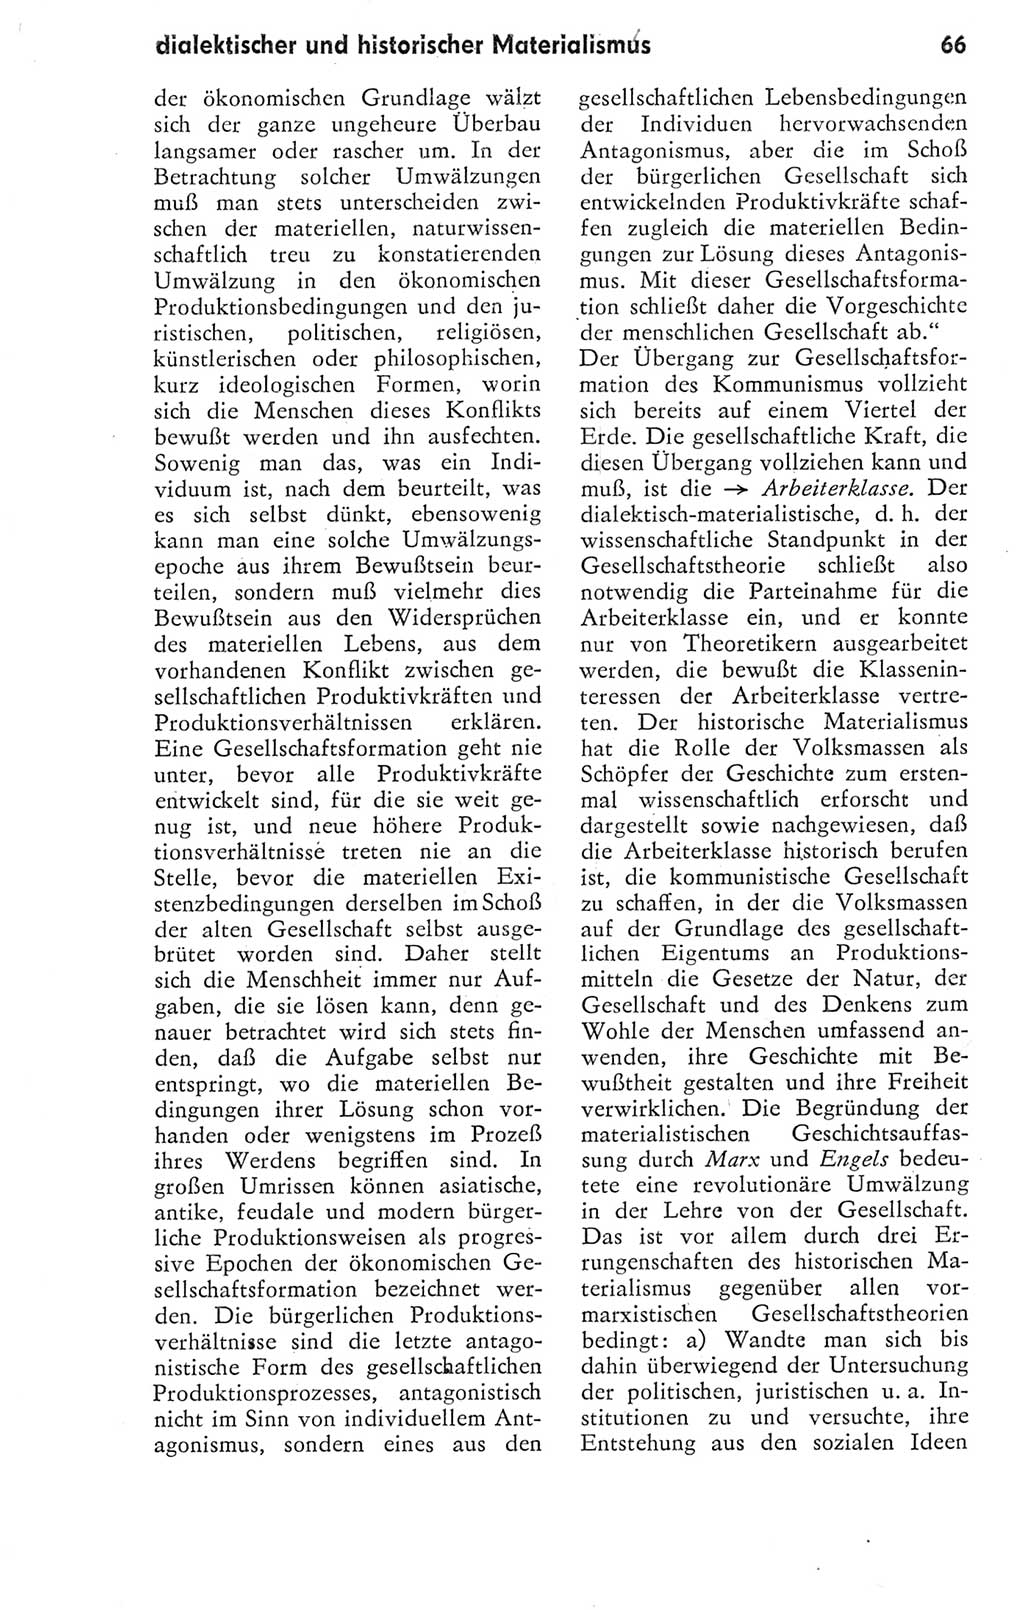 Kleines Wörterbuch der marxistisch-leninistischen Philosophie [Deutsche Demokratische Republik (DDR)] 1974, Seite 66 (Kl. Wb. ML Phil. DDR 1974, S. 66)